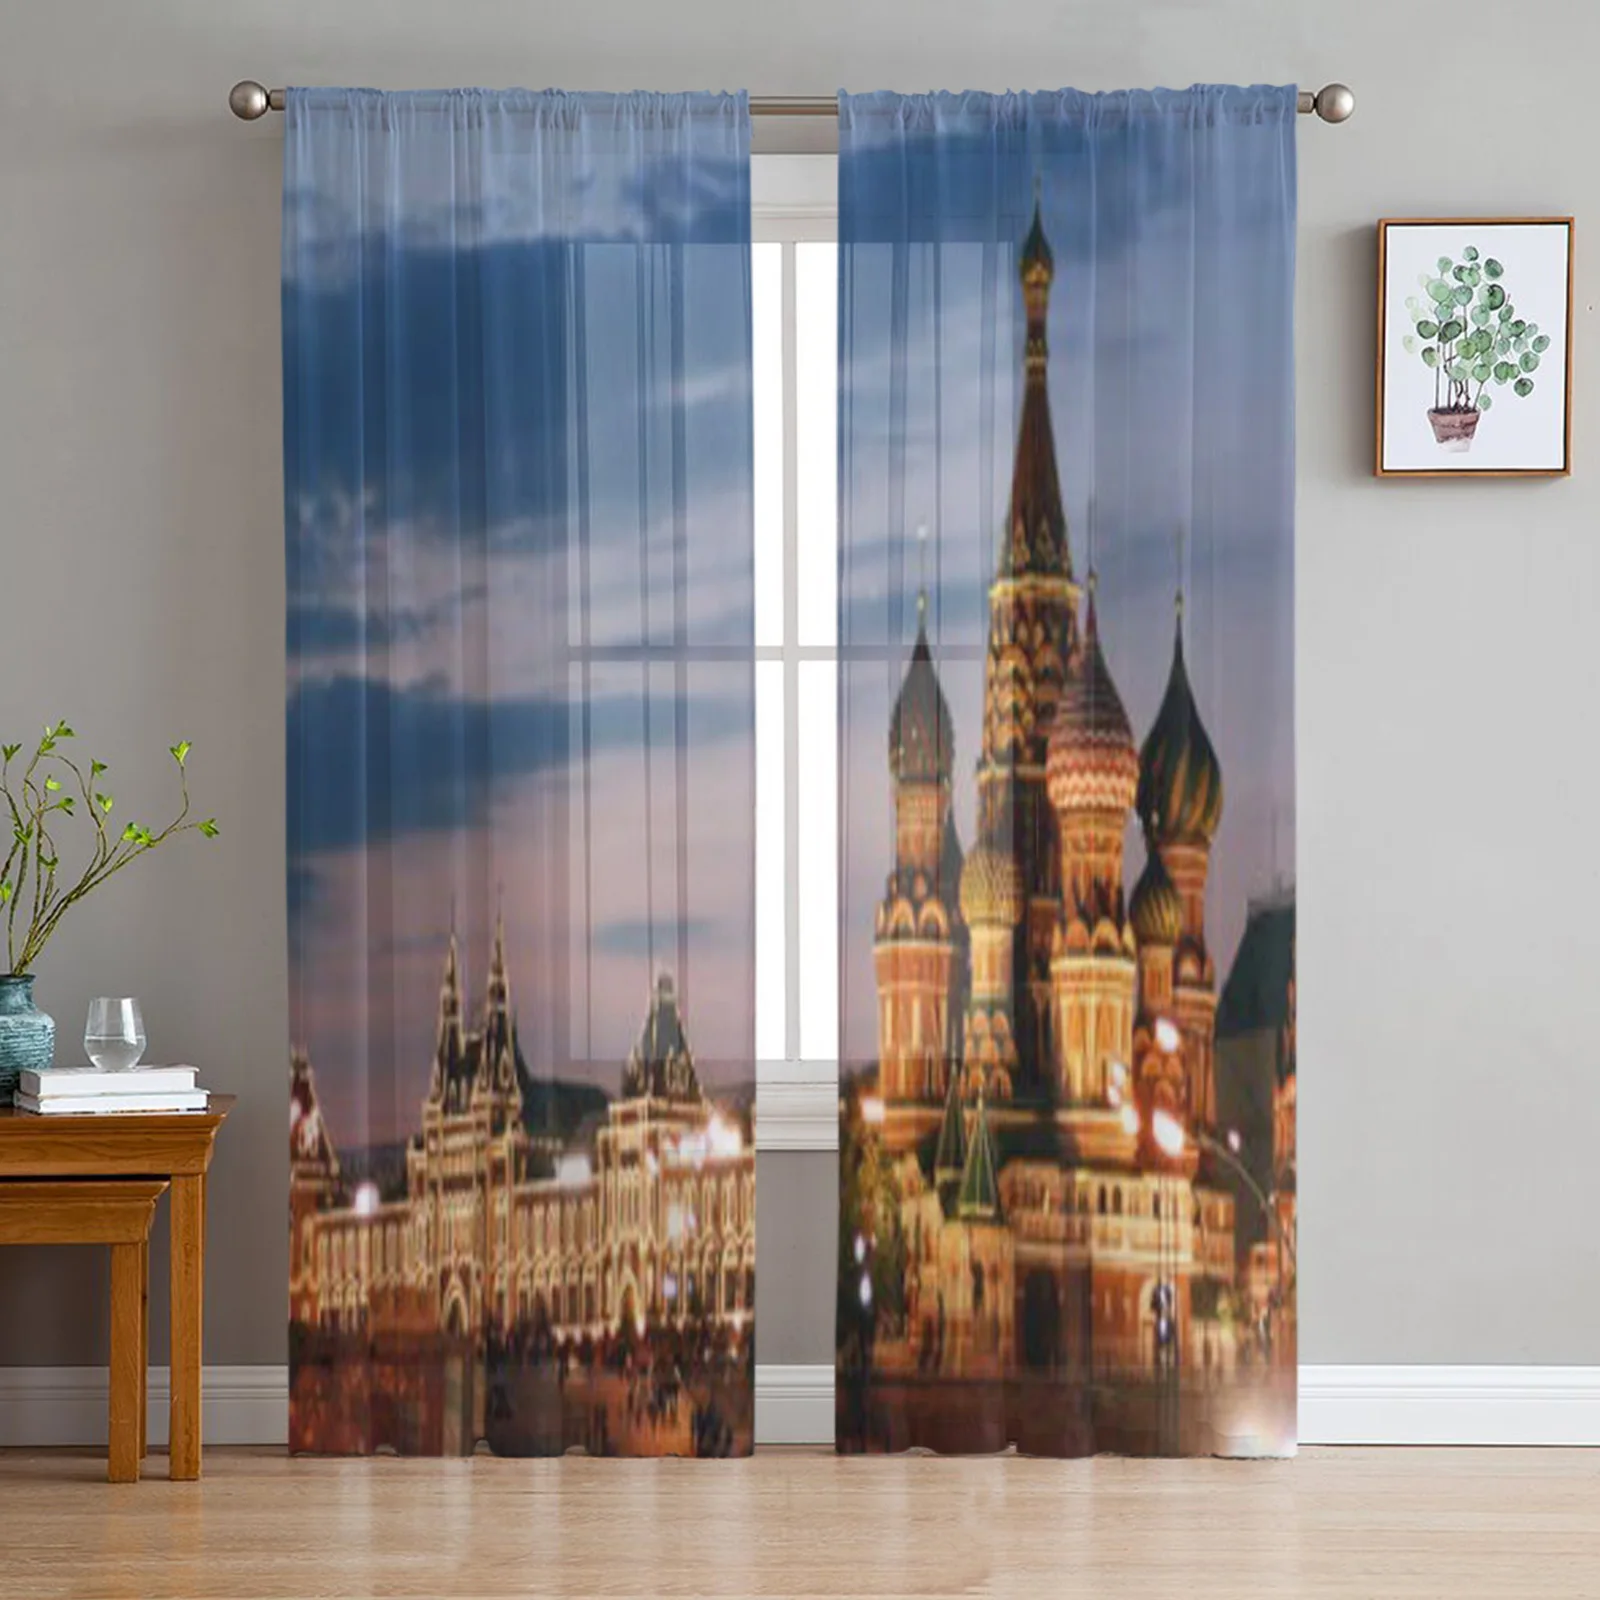 

Тюль Россия, Москва, прозрачные оконные шторы для гостиной, спальни, современные драпировки из органзы, декоративные занавески